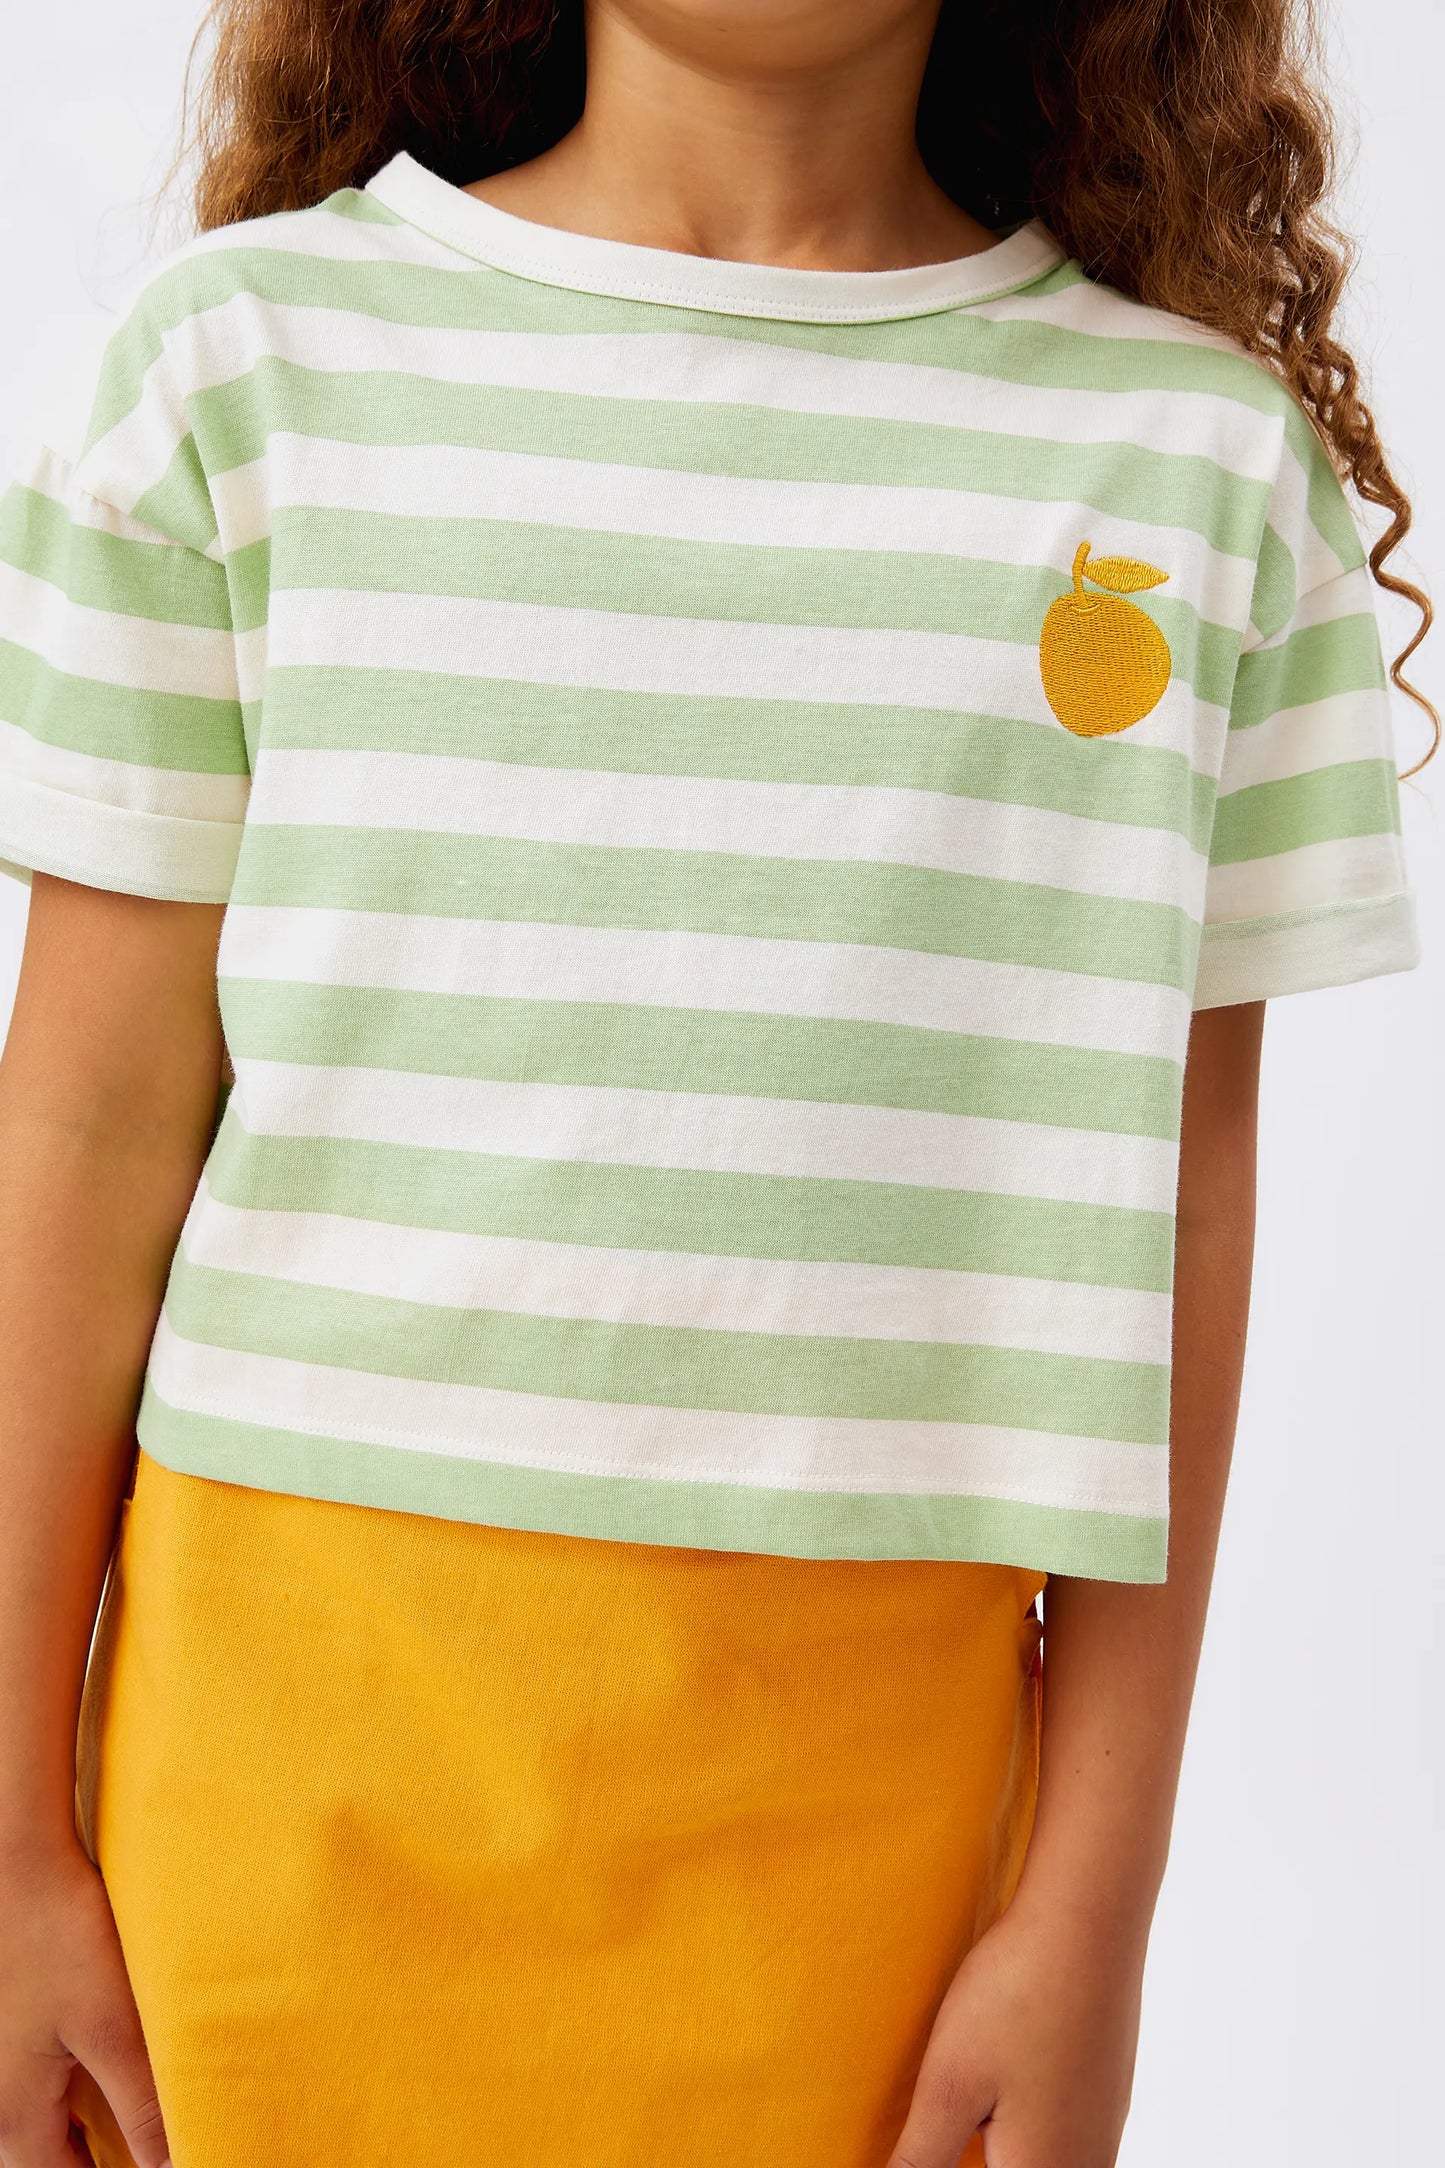 Camiseta unisex de rayas verdes